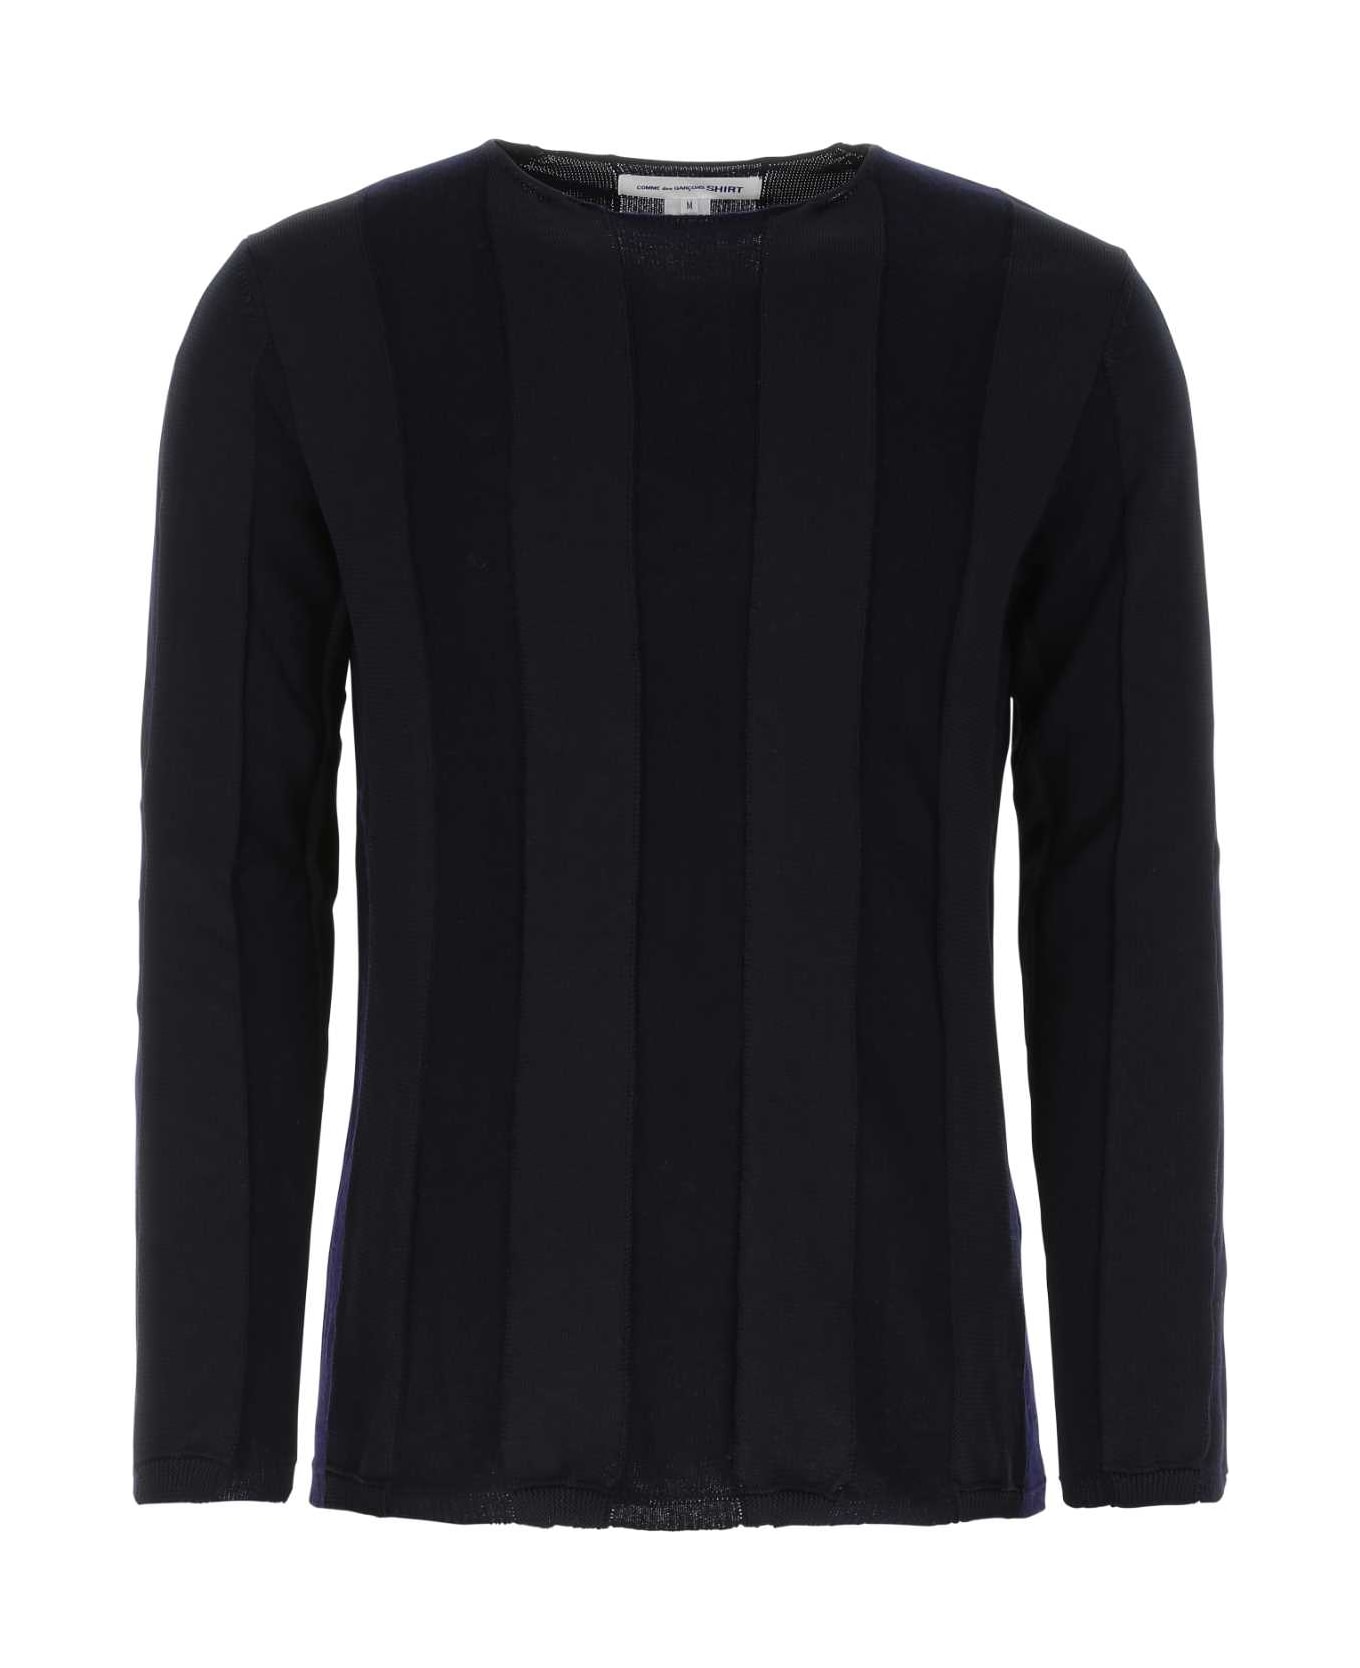 Comme des Garçons Shirt Midnight Blue Polyester Blend Sweater - NAVY ニットウェア